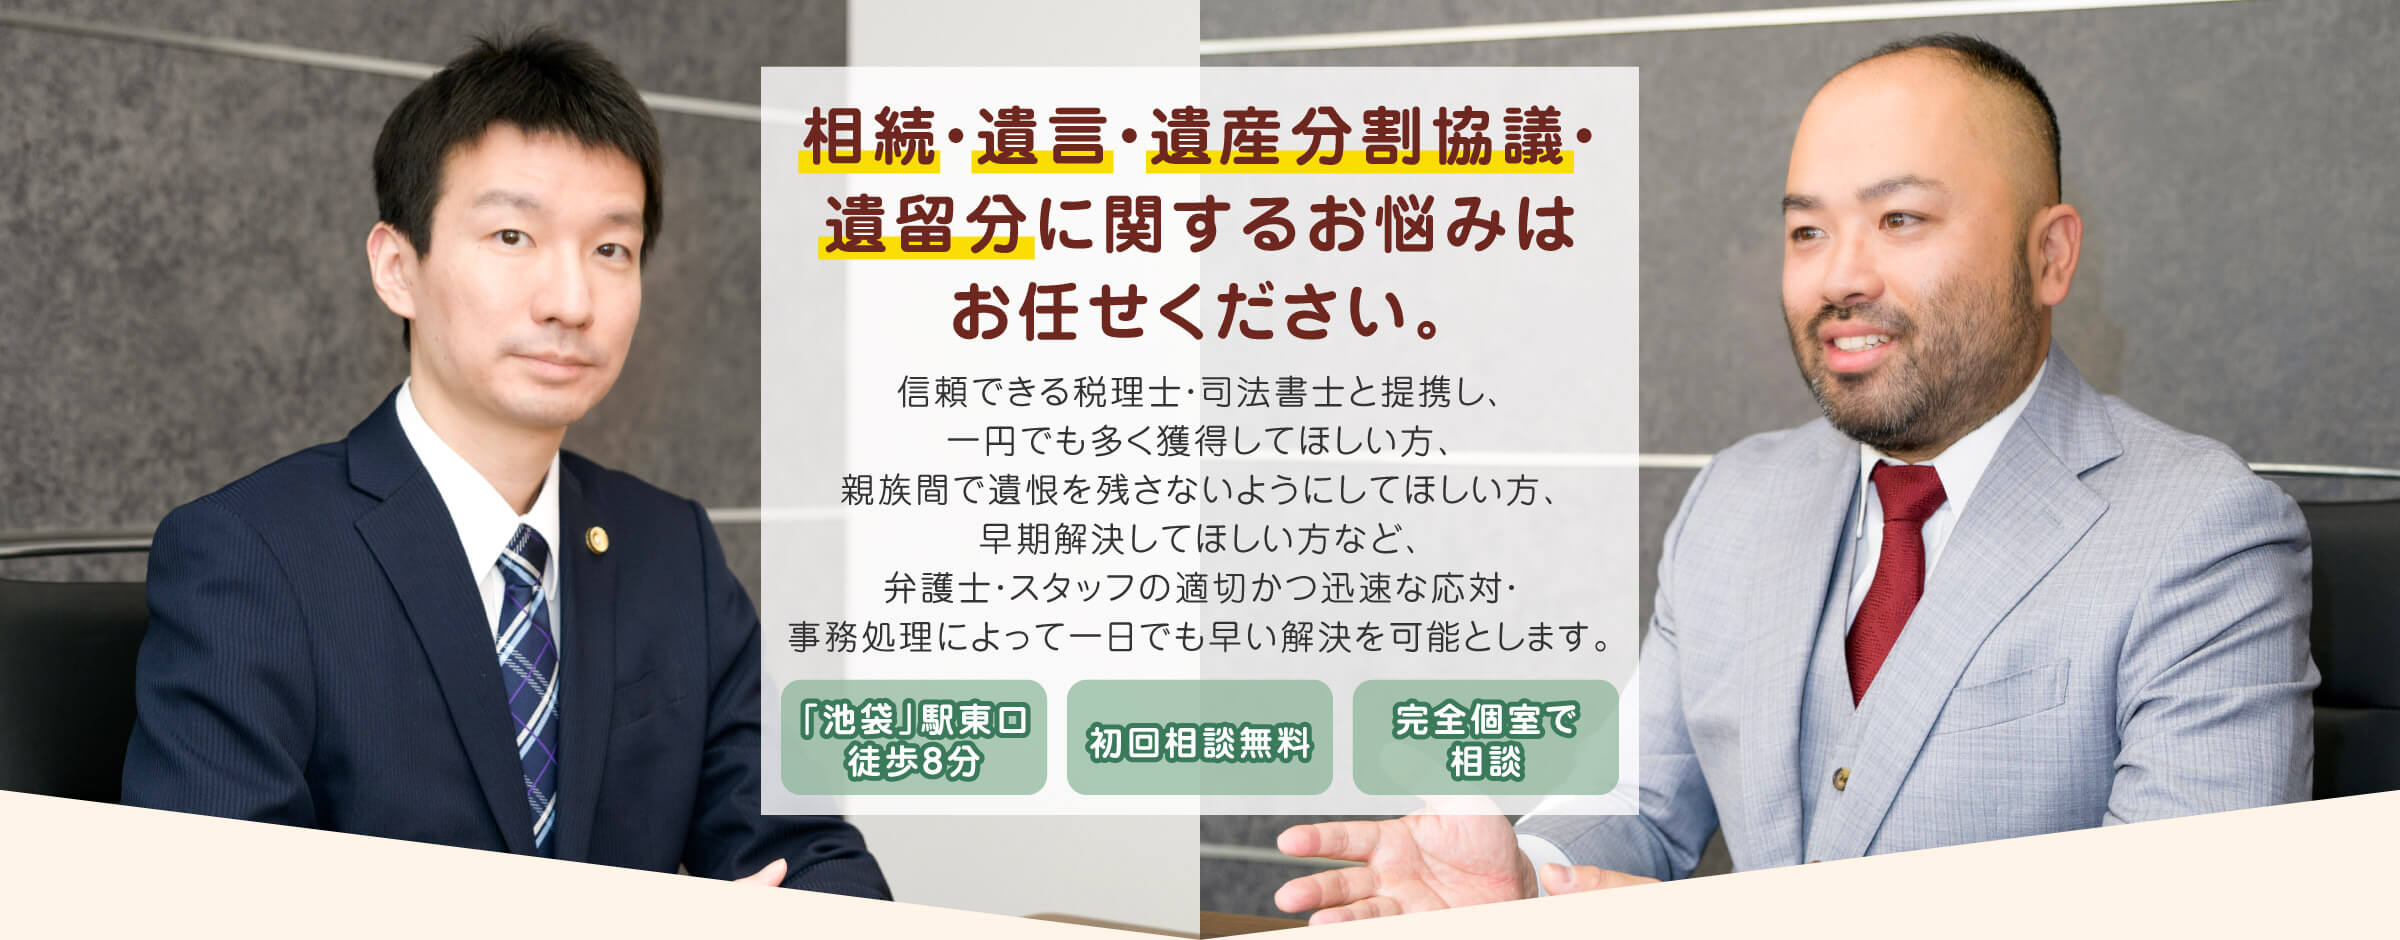 東京　遺産相続・遺言の法律相談なら「弁護士法人池袋吉田総合法律事務所」